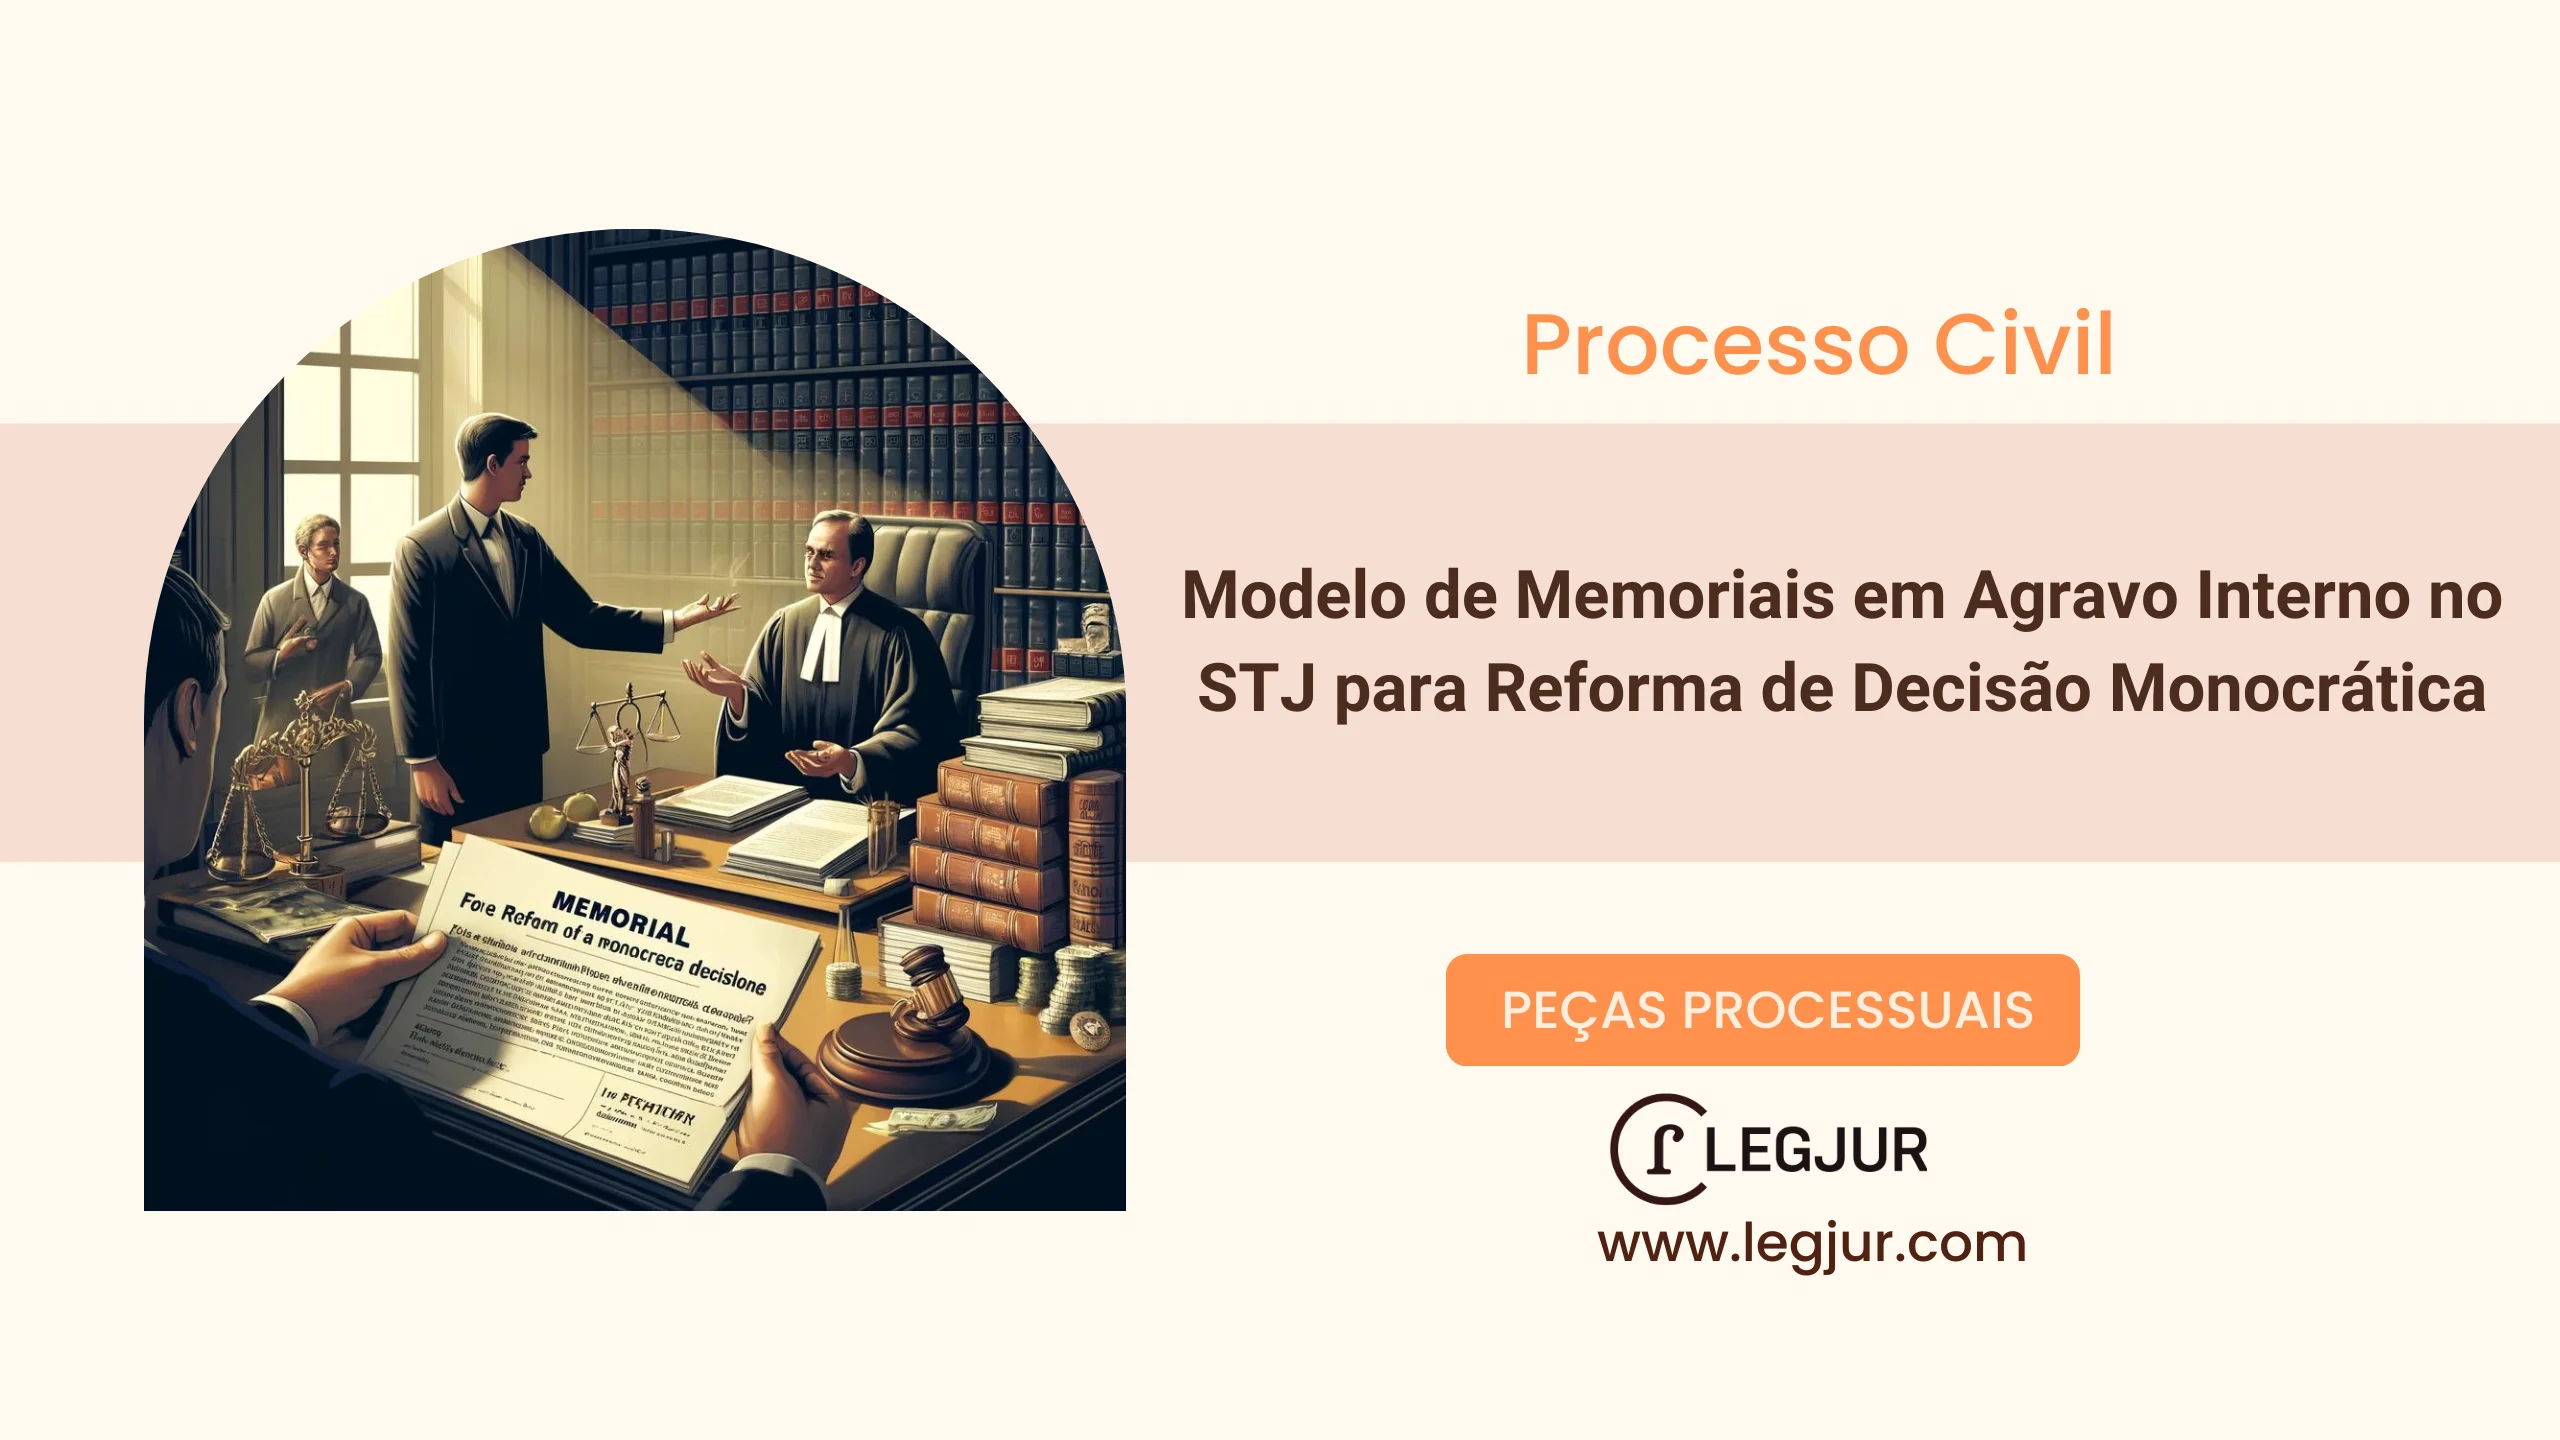 Modelo de Memoriais em Agravo Interno no STJ para Reforma de Decisão Monocrática